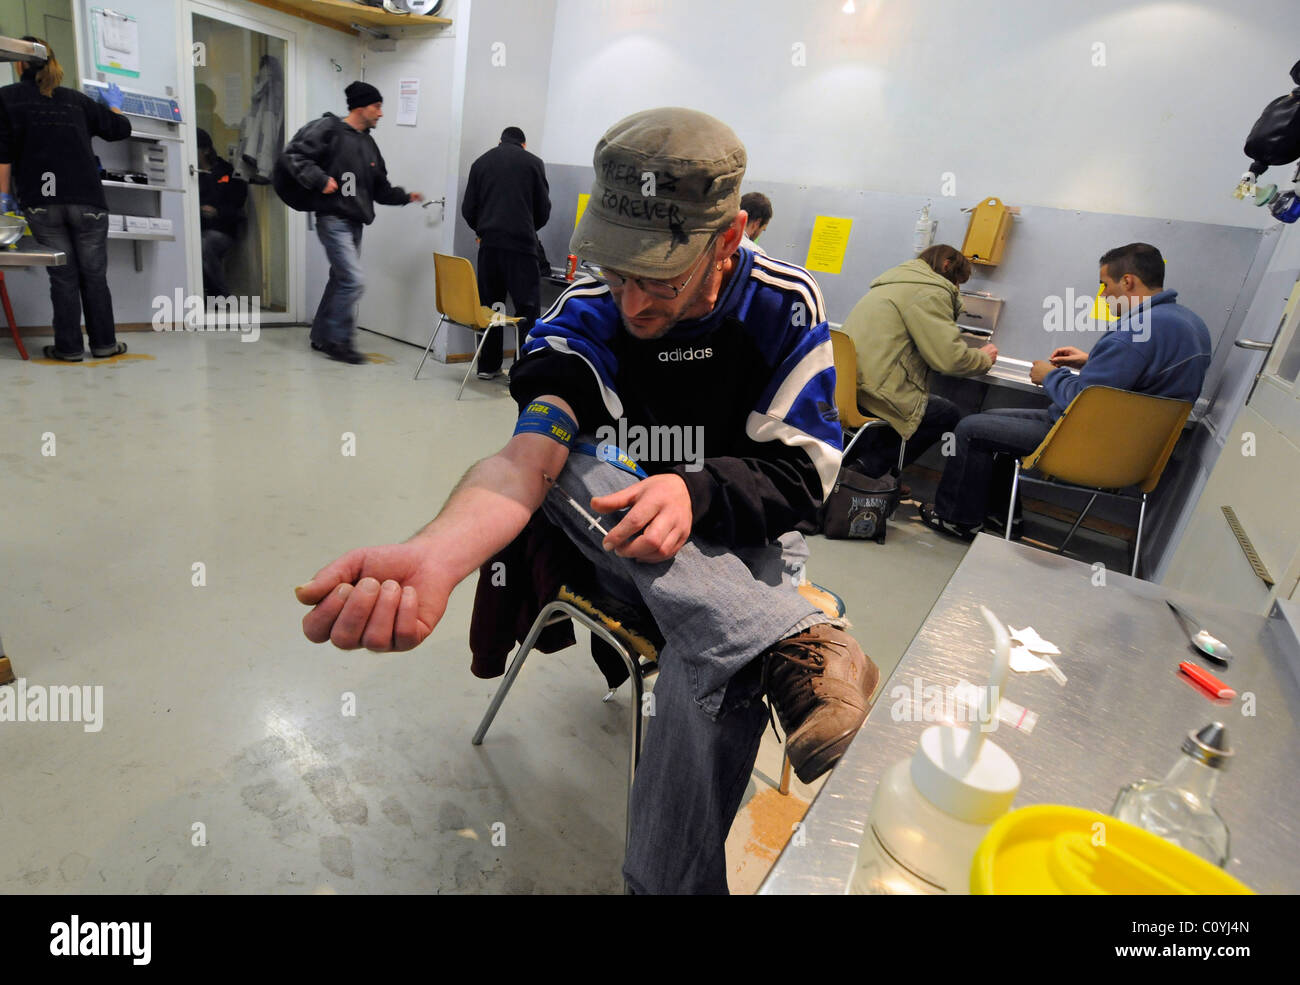 Un toxicomane en injection intraveineuse dans une galerie se "tirer", une chambre forte où les toxicomanes peuvent consommer de la drogue sous surveillance. Banque D'Images